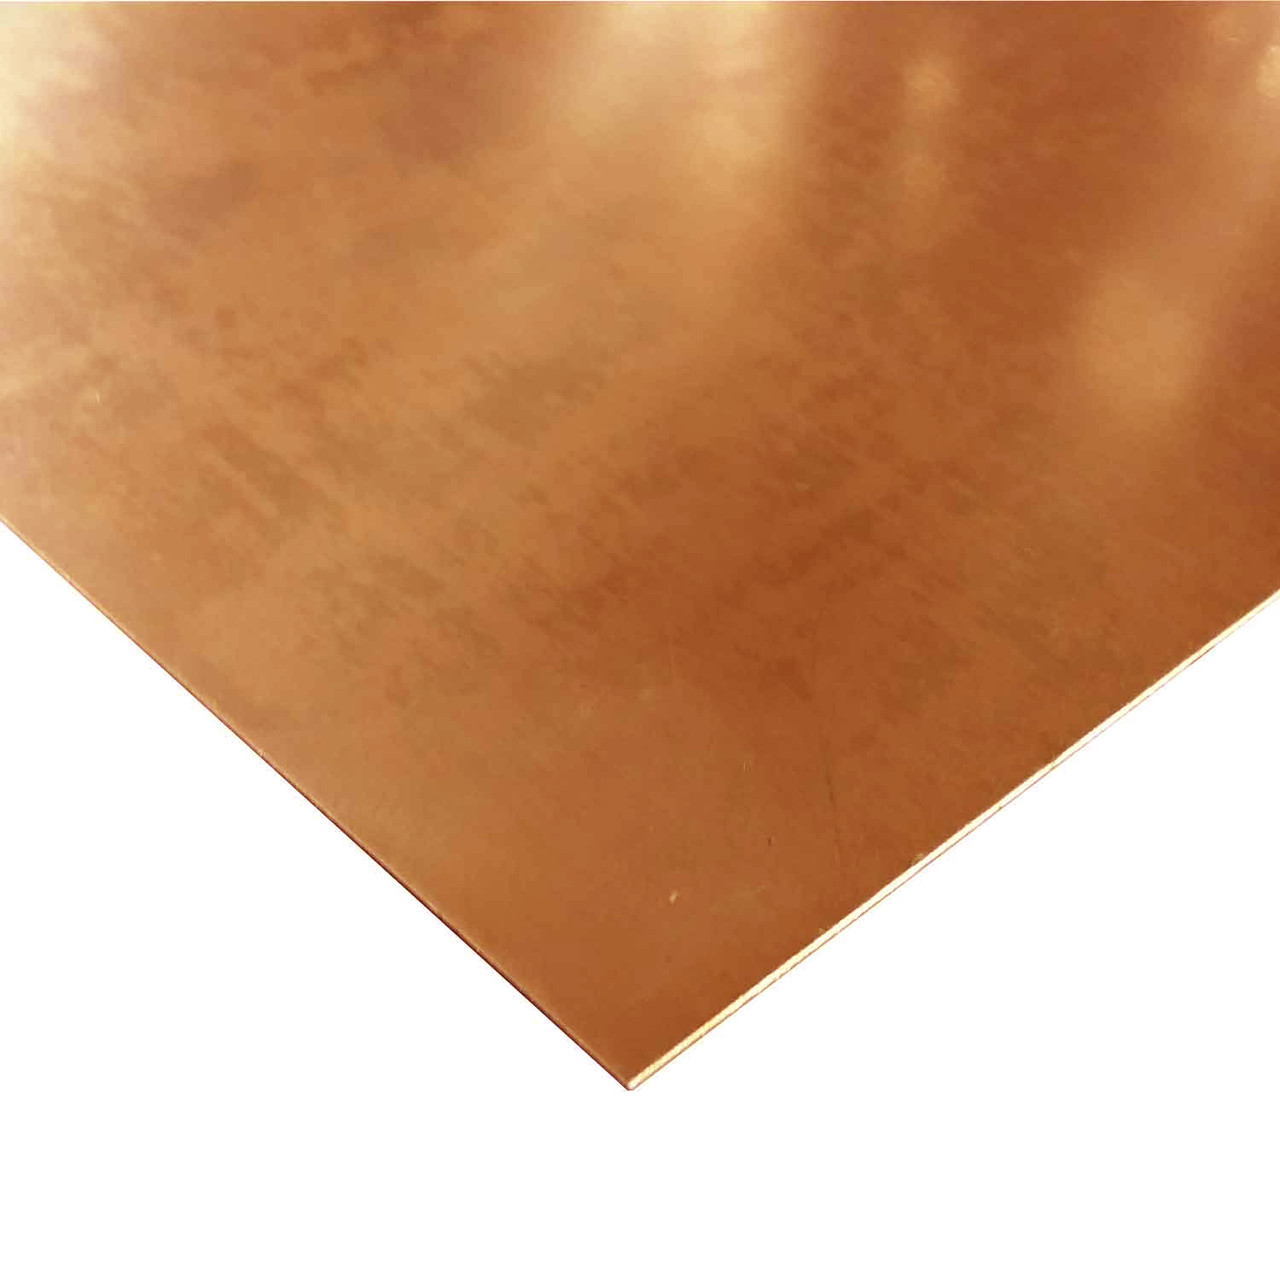 0.040" x 2" x 24", C110-H02 Copper Sheet